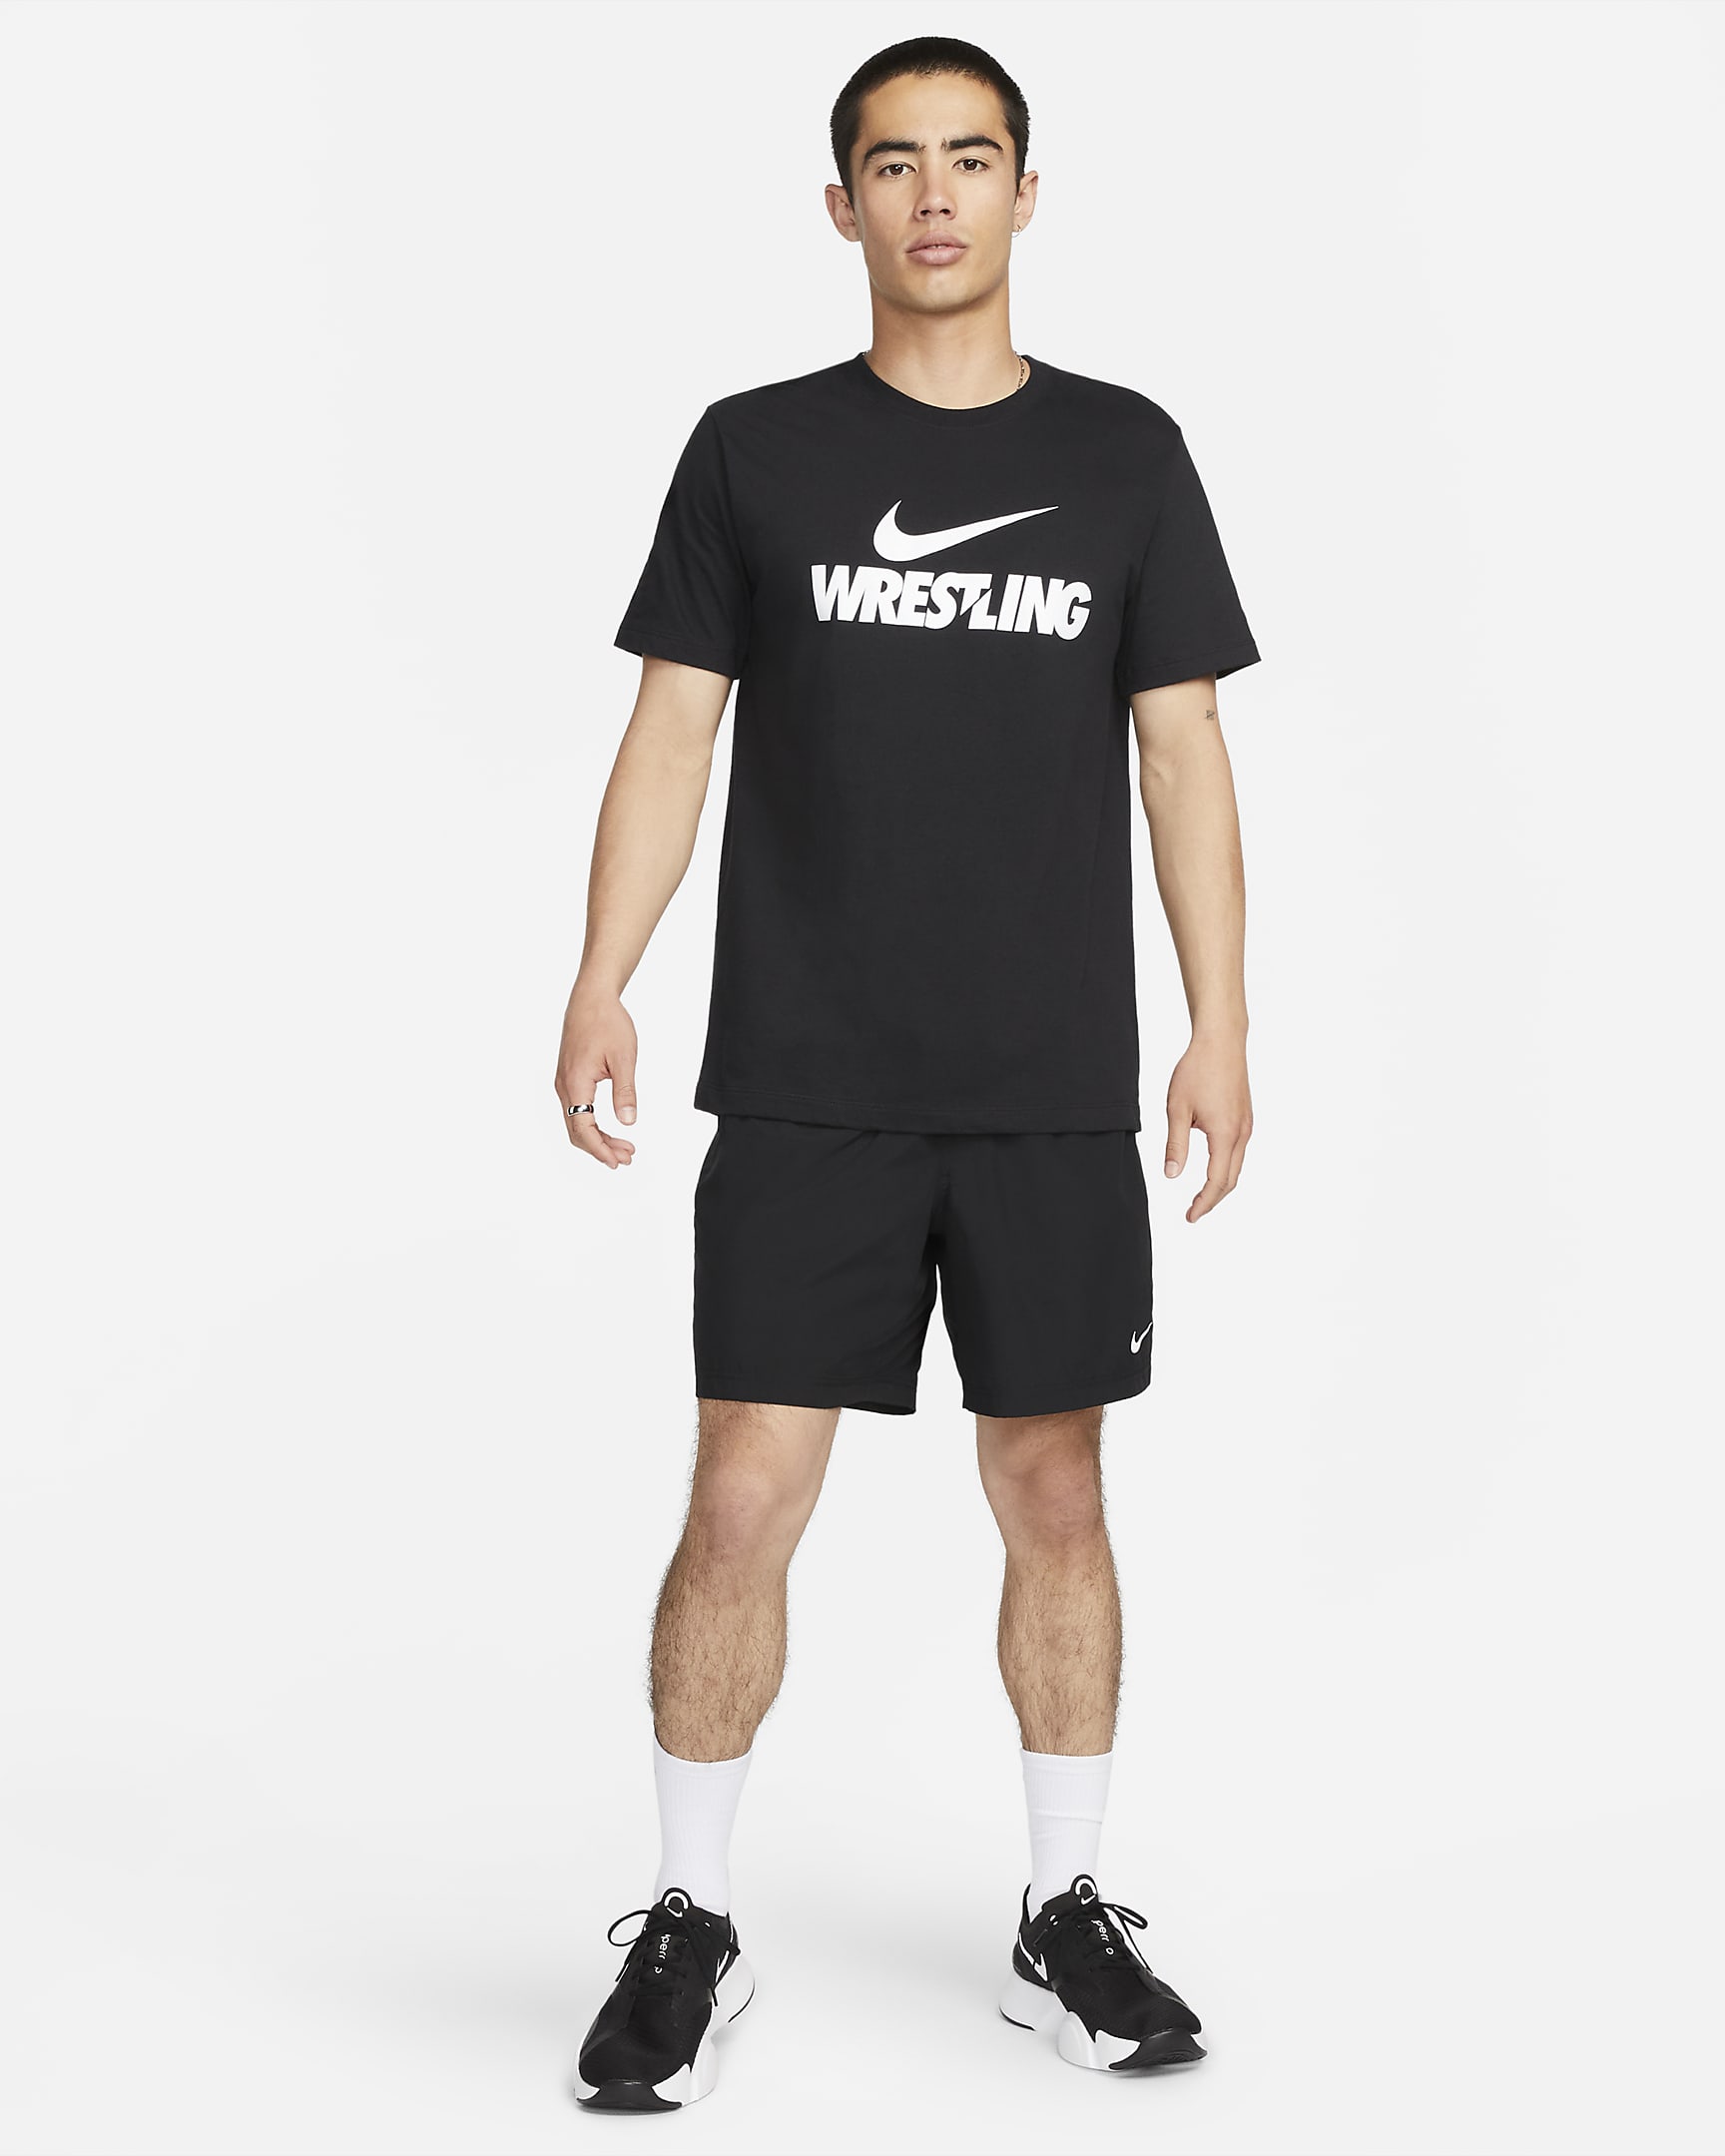 Playera para hombre Nike Wrestling. Nike.com